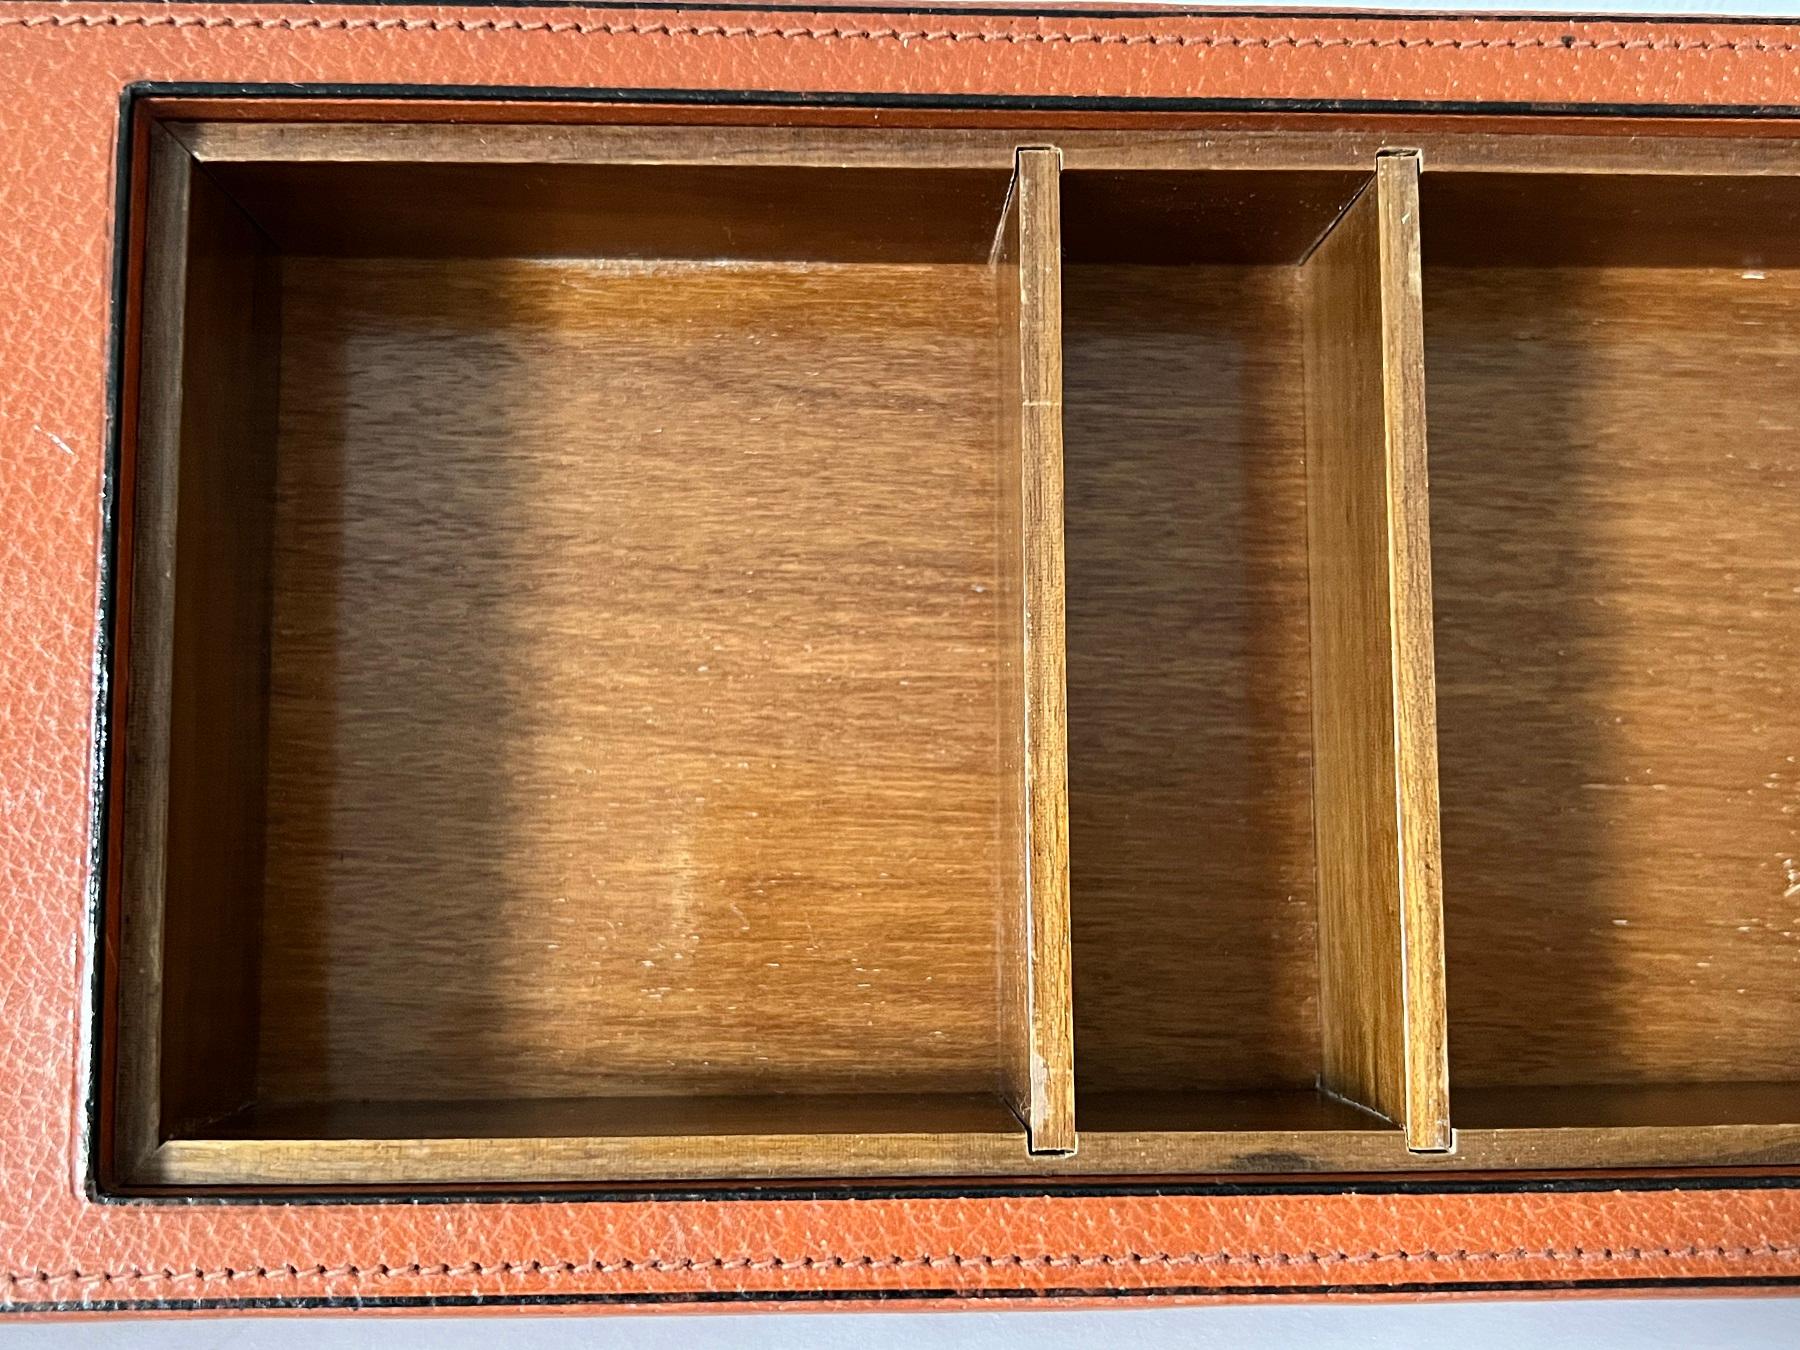 Magnifique boîte de bureau ou cercueil en cuir et verre taillé. 
Fabriqué en Italie dans les années 1970.
La boîte est garnie de cuir lisse, d'une fine bordure de cuir noir et de coutures finement finies. 
Le cercueil est doté d'un compartiment